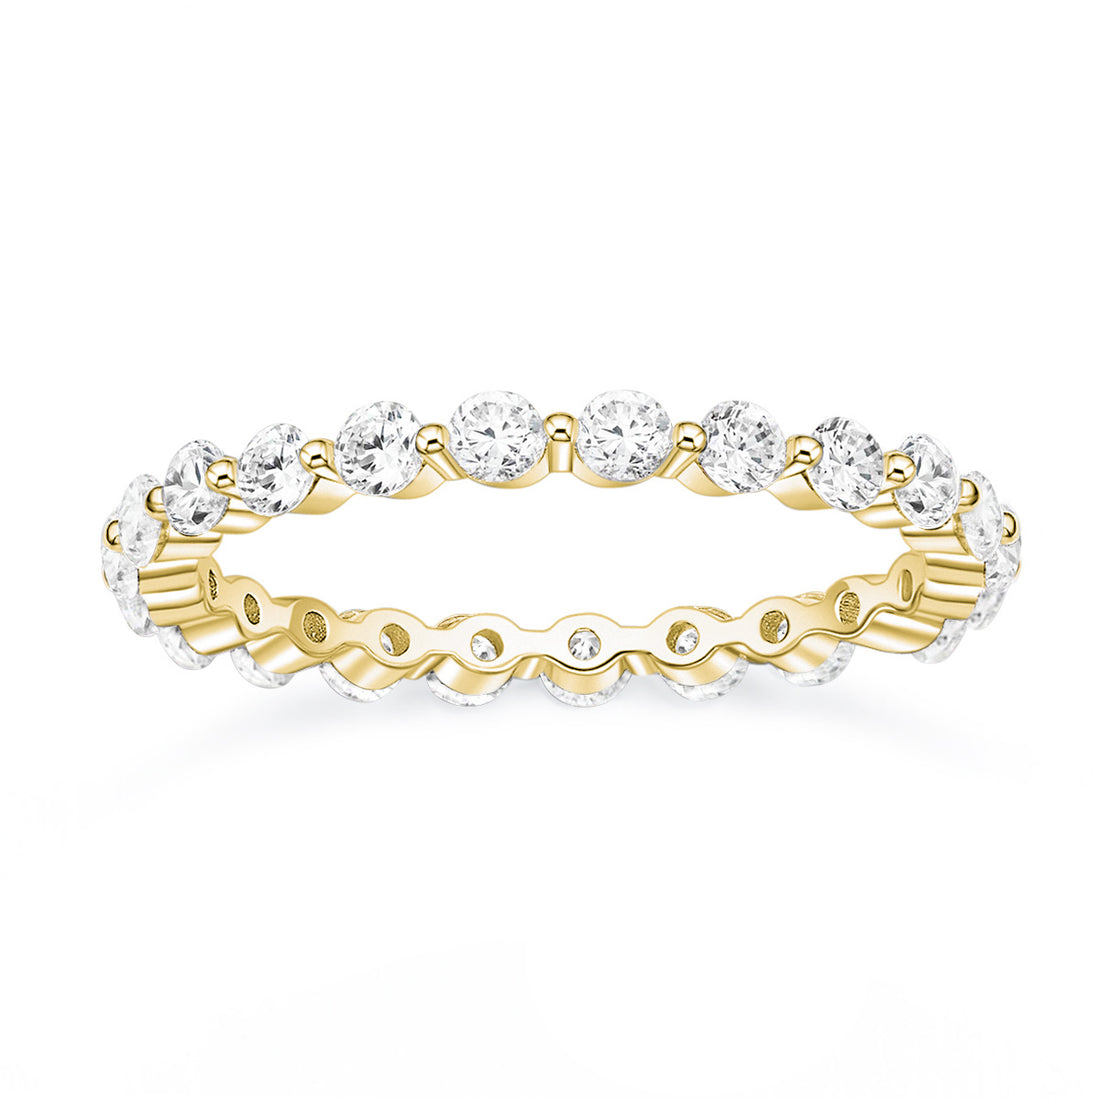 shiny wedding rings; quality engagement rings; Eamti;